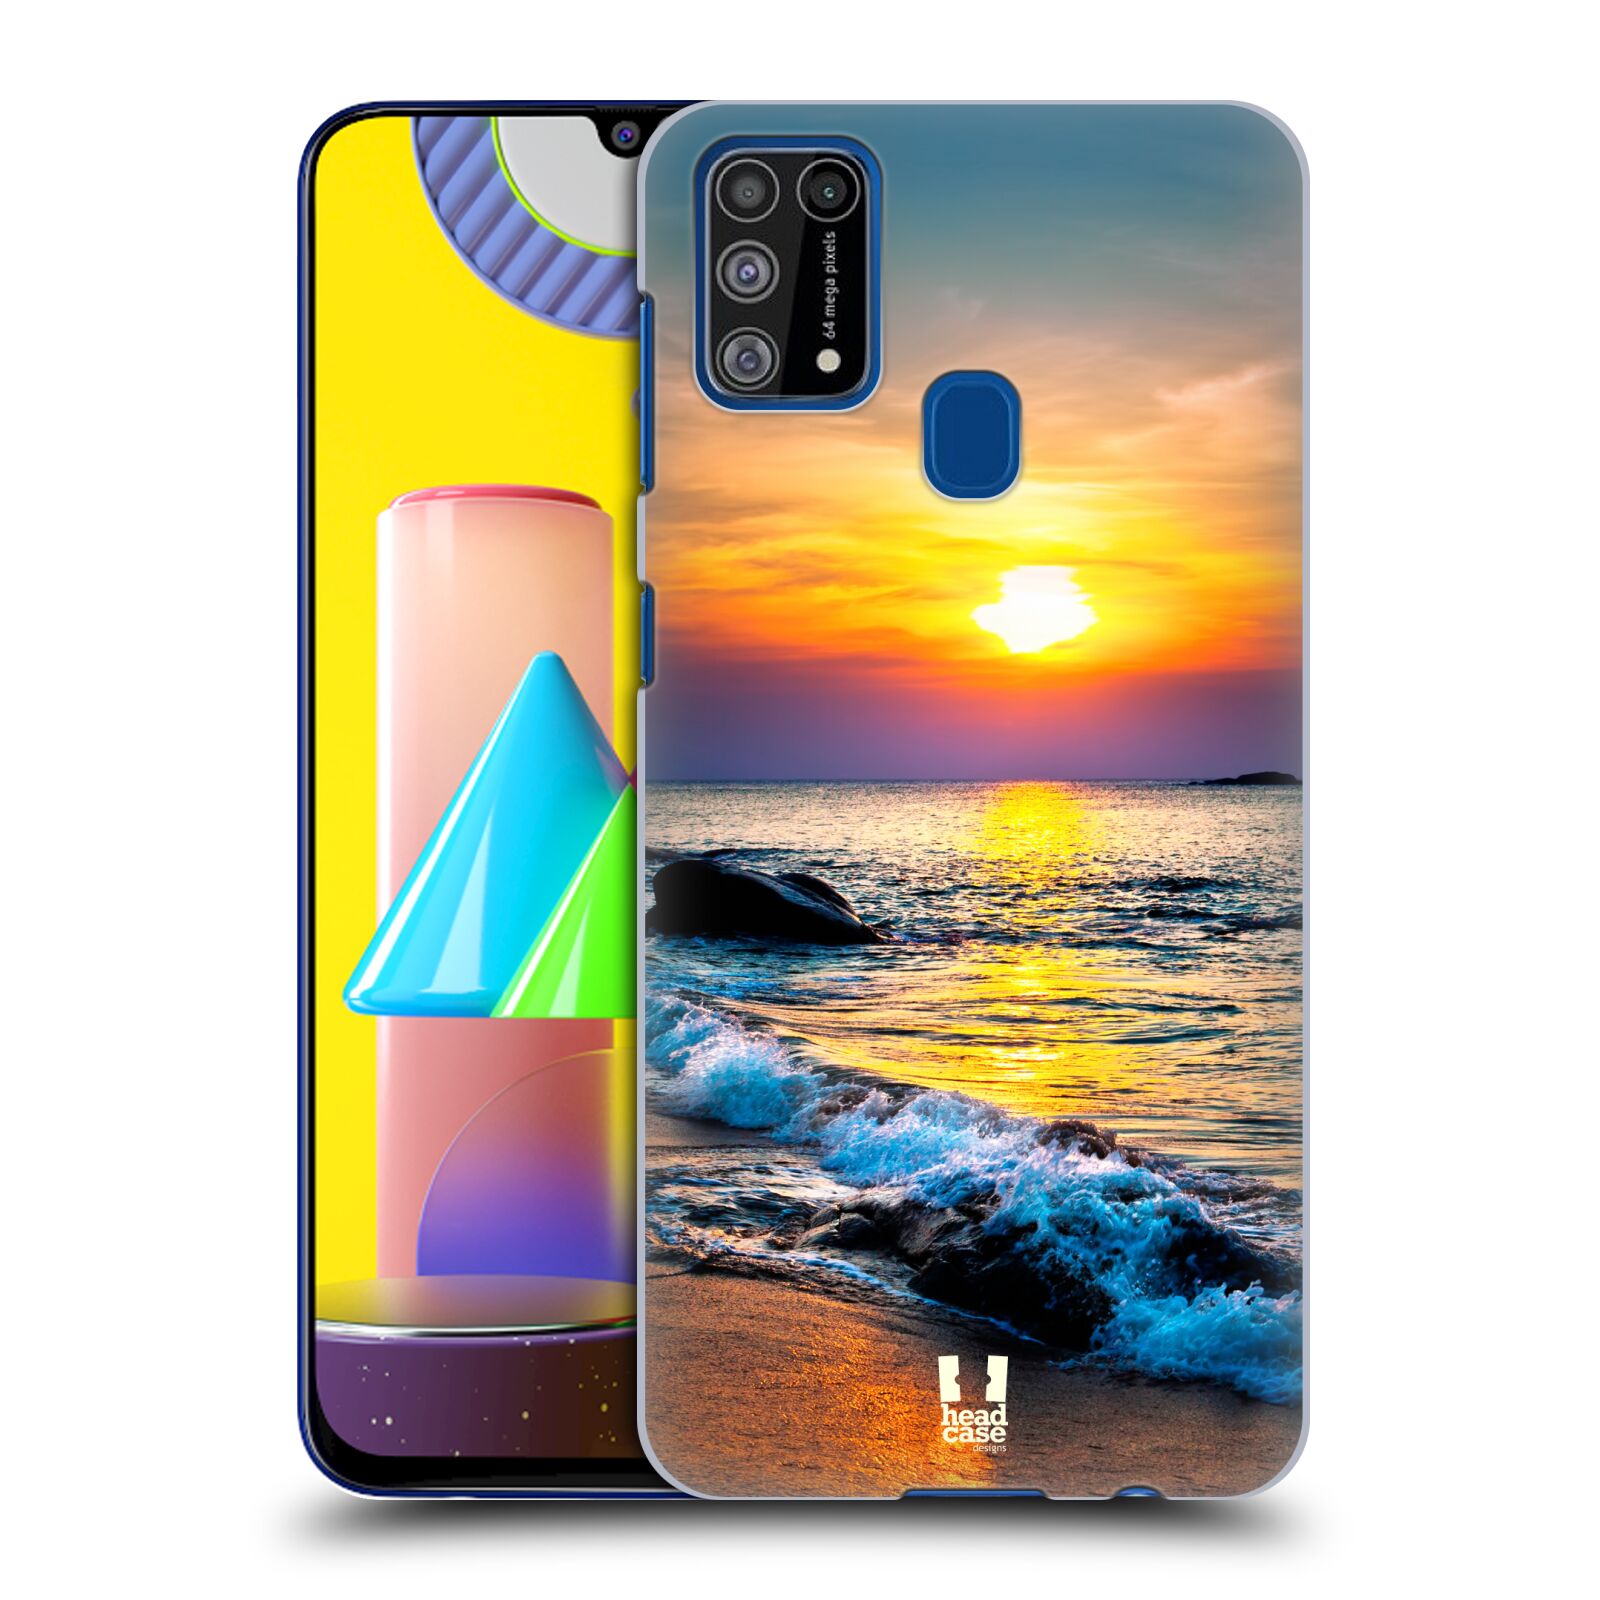 Plastový obal HEAD CASE na mobil Samsung Galaxy M31 vzor Pláže a Moře barevný západ slunce